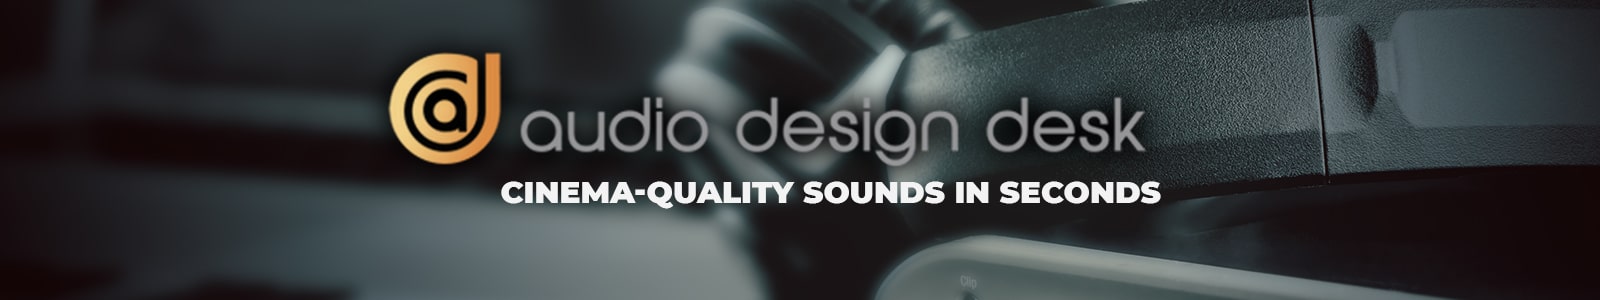 audio design desk